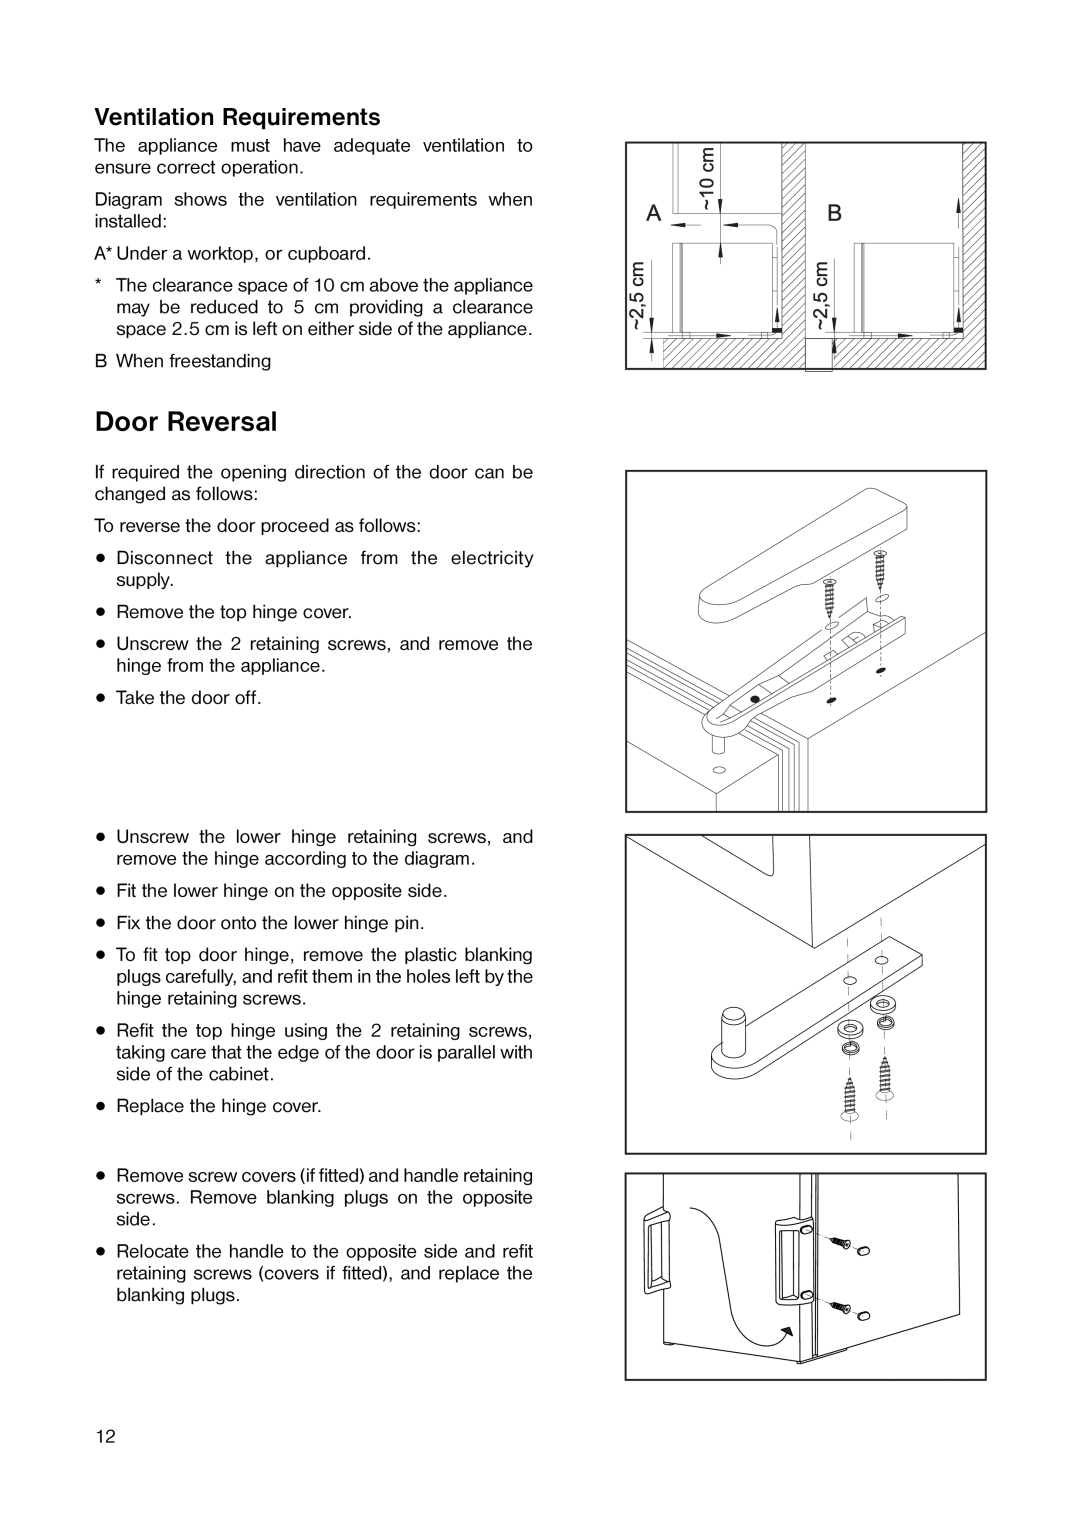 Zanussi ZT 25 manual Door Reversal, Ventilation Requirements 